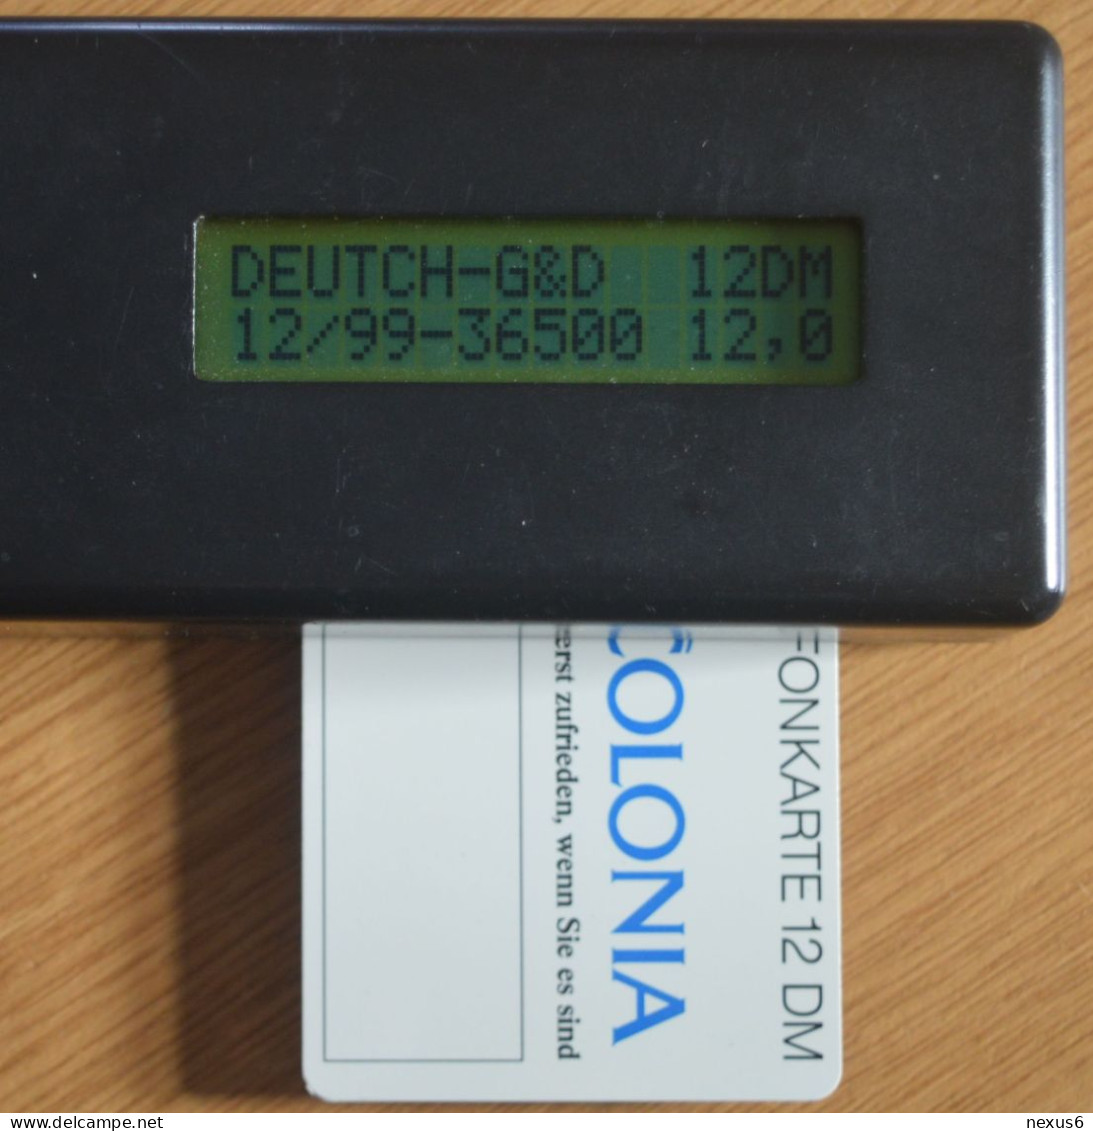 Germany - Colonia Versicherung 1 – Autopanne - O 0303A - 09.1993, 12DM, 3.000ex, Mint - O-Series: Kundenserie Vom Sammlerservice Ausgeschlossen